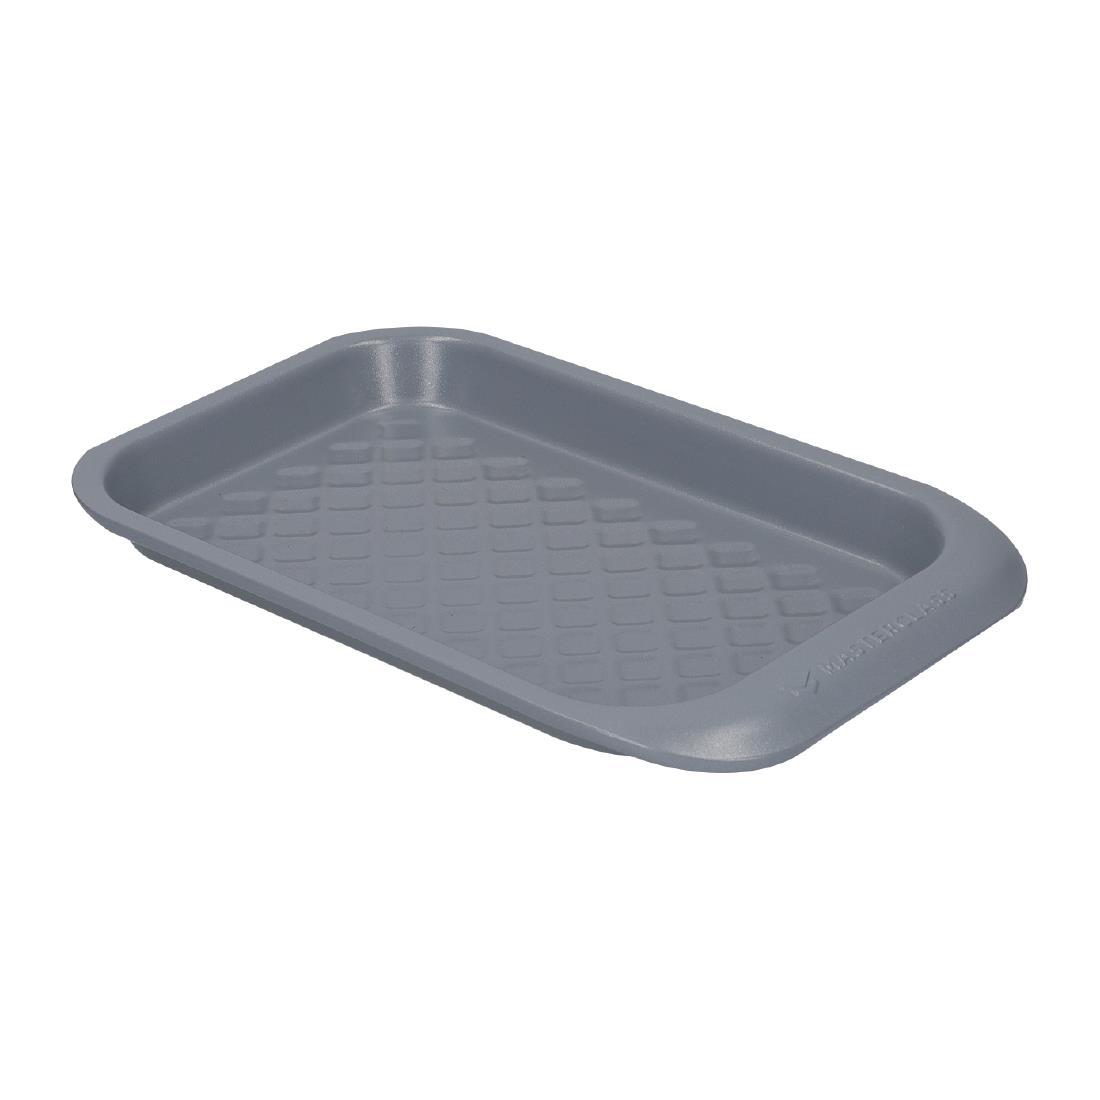 MasterClass Smart Ceramic Non-Stick Individual Baking Tray - 24x15x2.5cm - FS211  - 1